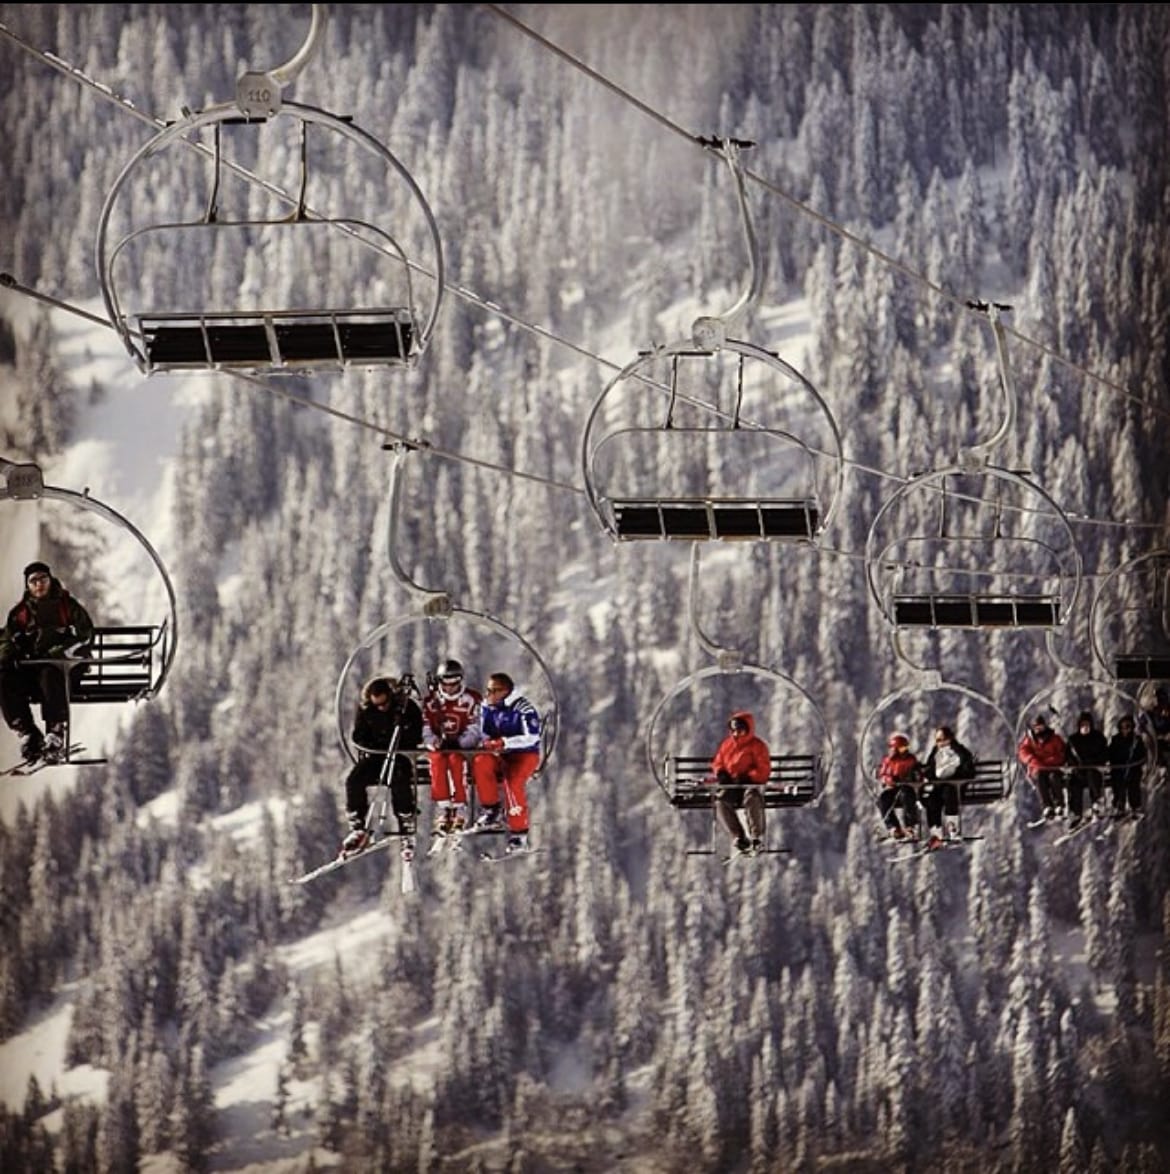 Ski lift Megeve